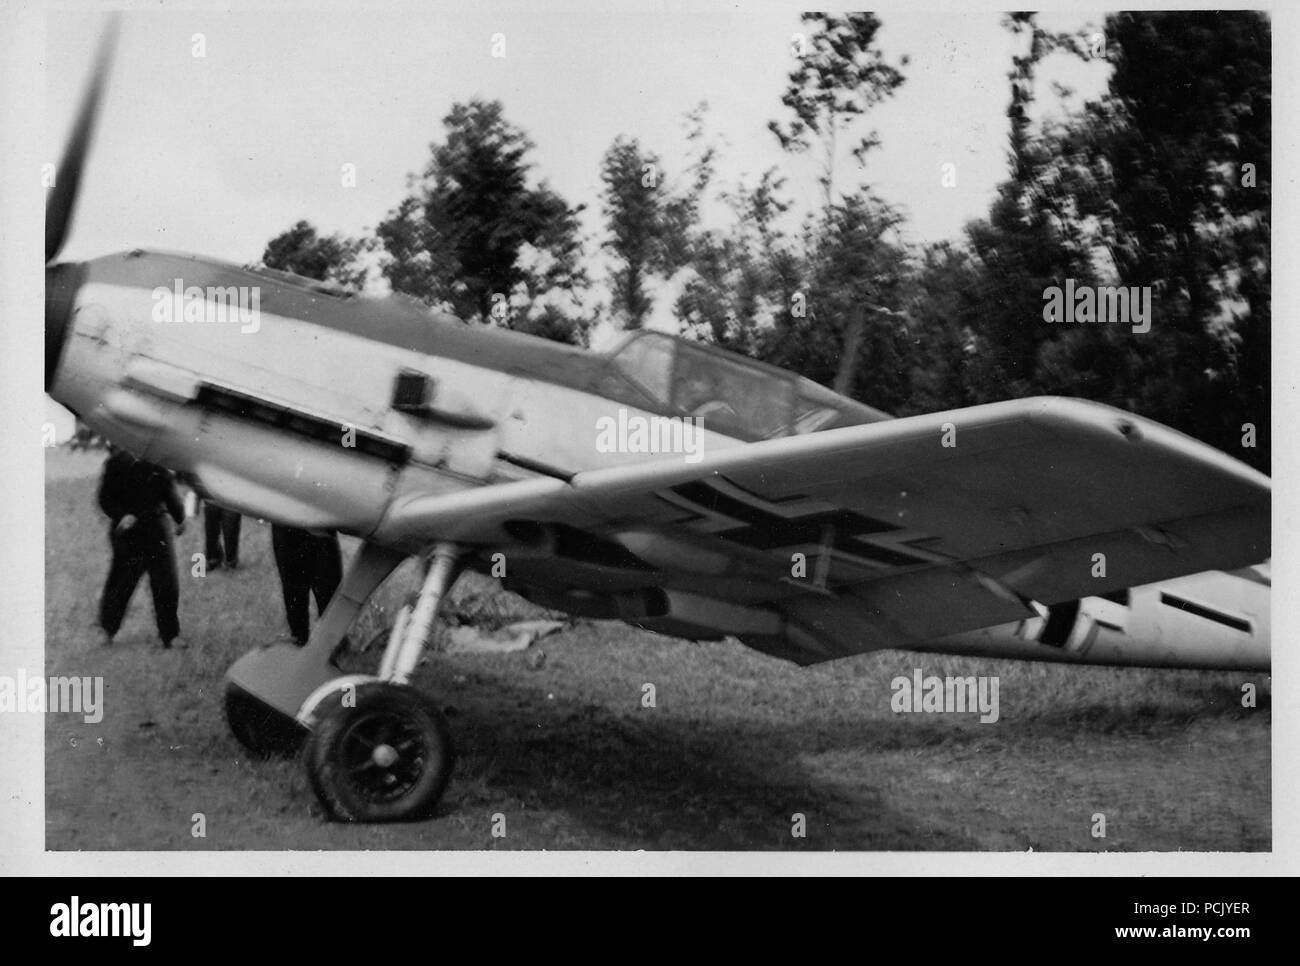 Immagine da un album di foto relative a II. Gruppe, Jagdgeschwader 3: un Messerschmitt Bf109E DI II. Gruppe, Jagdgeschwader 3 teste fuori dalla copertura in corrispondenza di Samar Airfield (Wierre au Bois) in Francia durante l'estate del 1940. Foto Stock